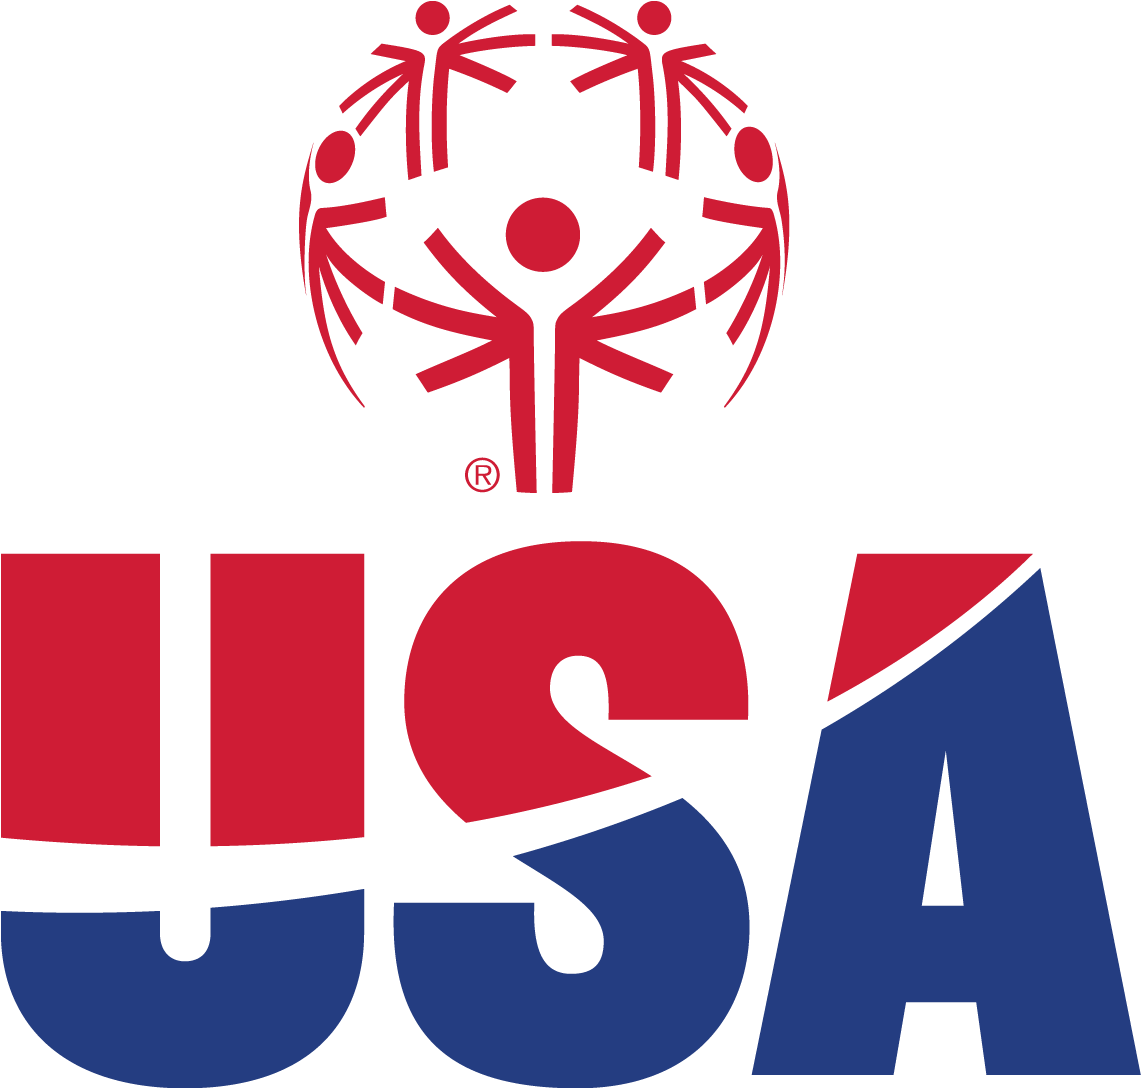 Special Olympics Usa - Special Olympics Usa (1237x1237)